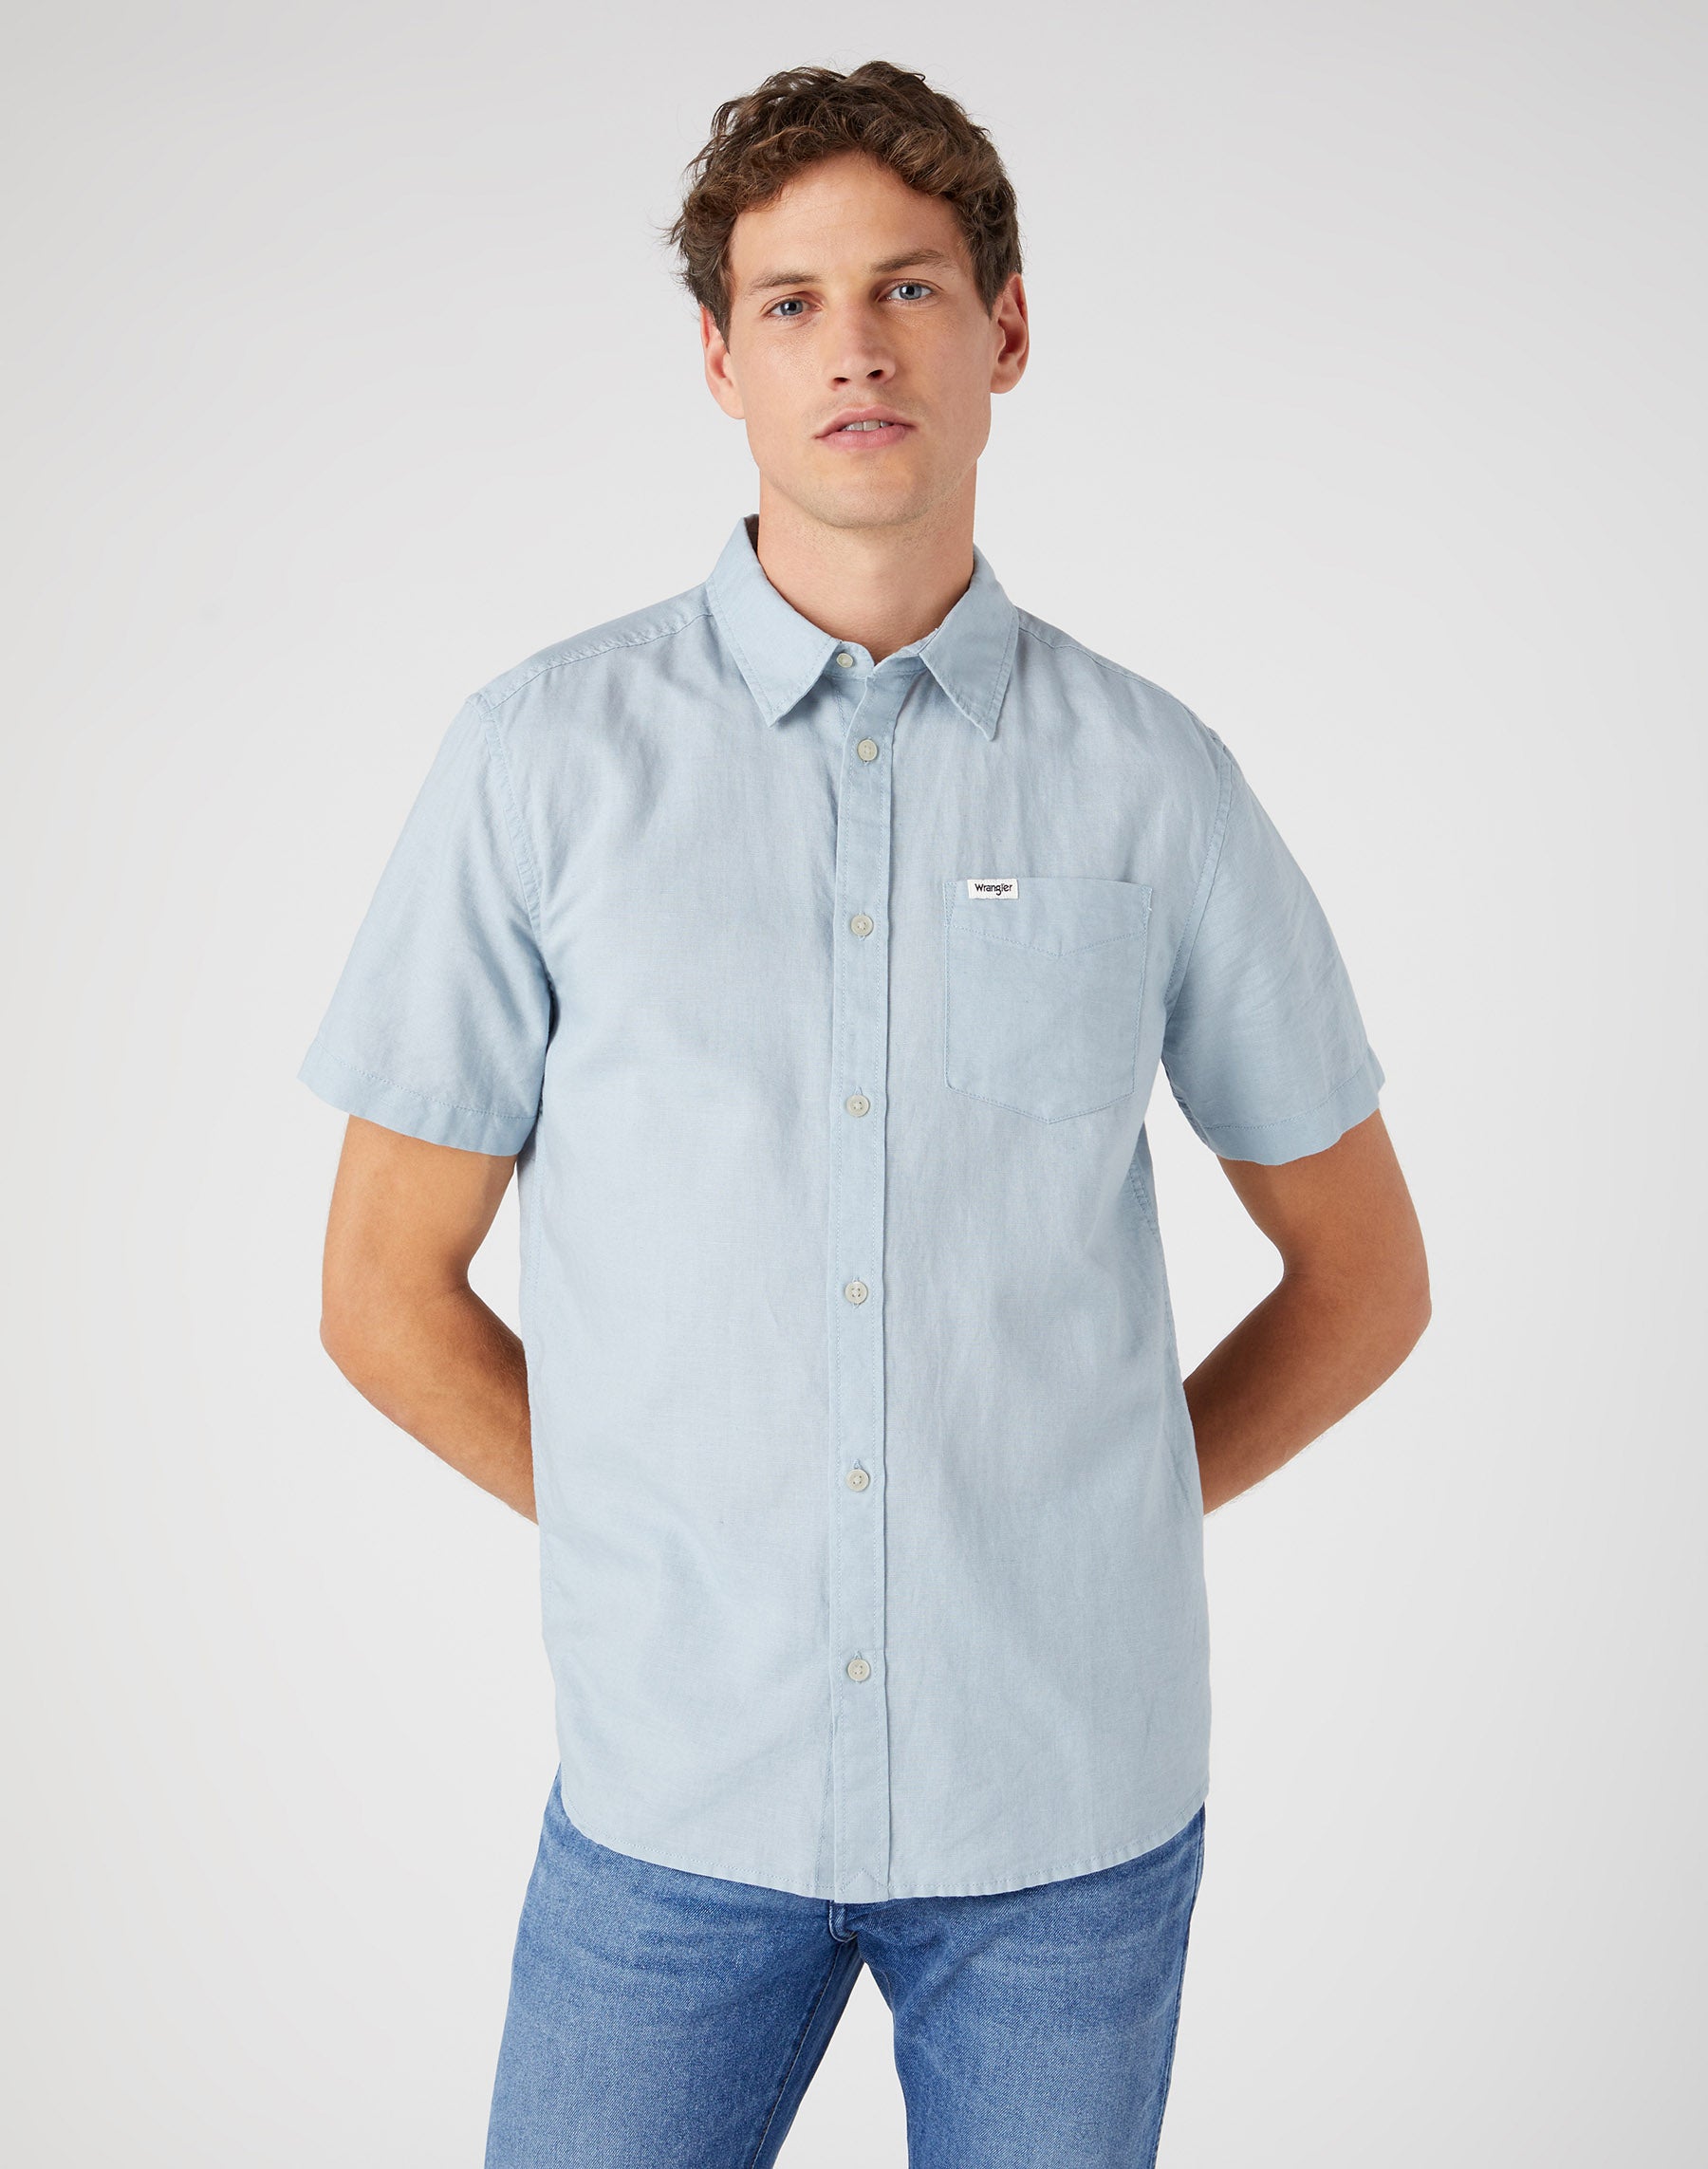 Kurzarm One Pocket Shirt in Blue Fog Hemden Wrangler   